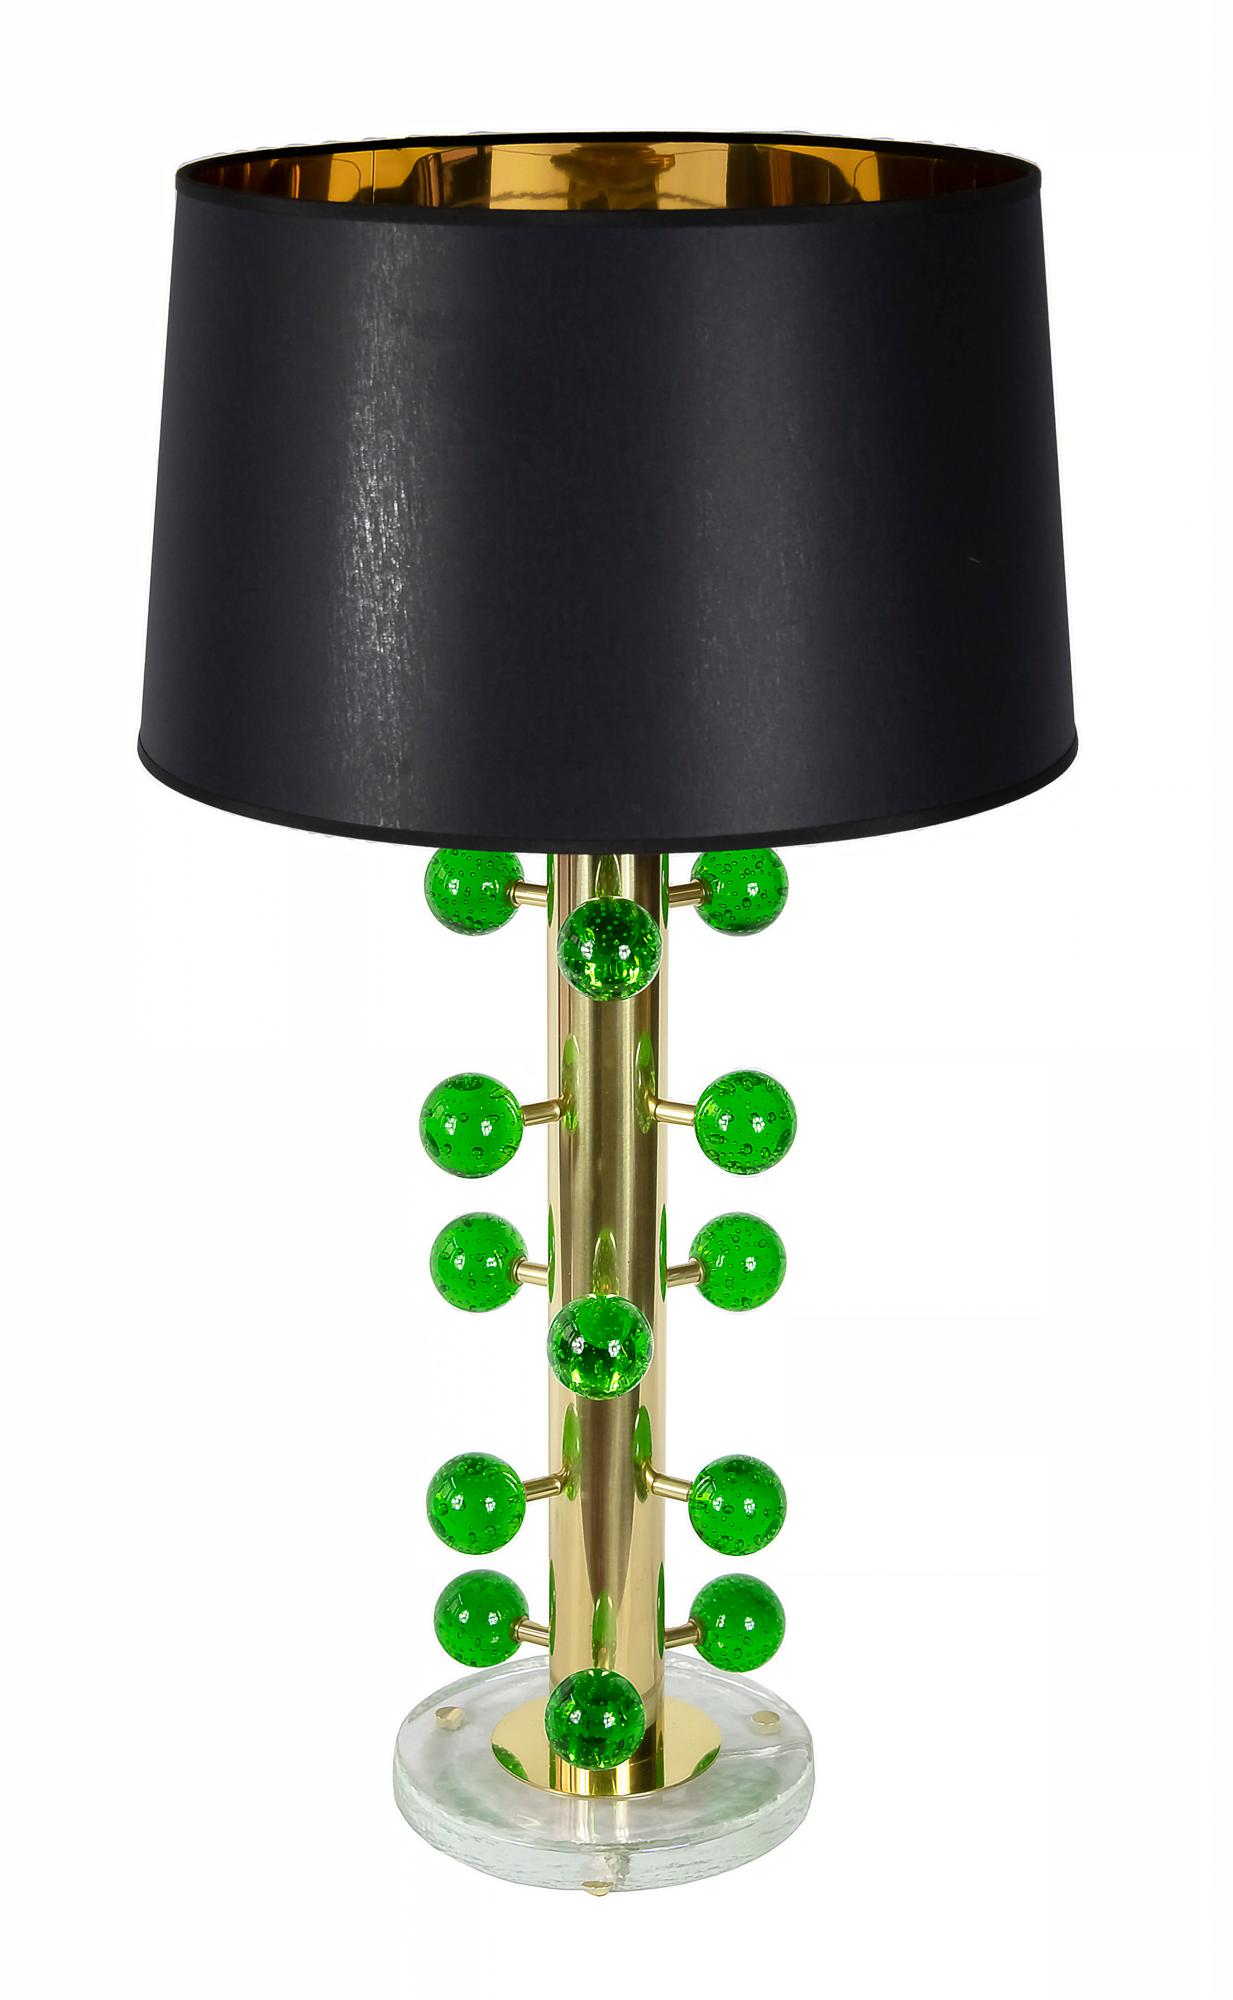 Dieses Paar italienischer Tischlampen ist aus massivem Messing und einem Glassockel gefertigt.
Verziert mit Details aus grünem Muranoglas.
Beide Lampen sind mit neuen satinierten schwarzen Textilschirmen mit goldener Innenseite ausgestattet.
 